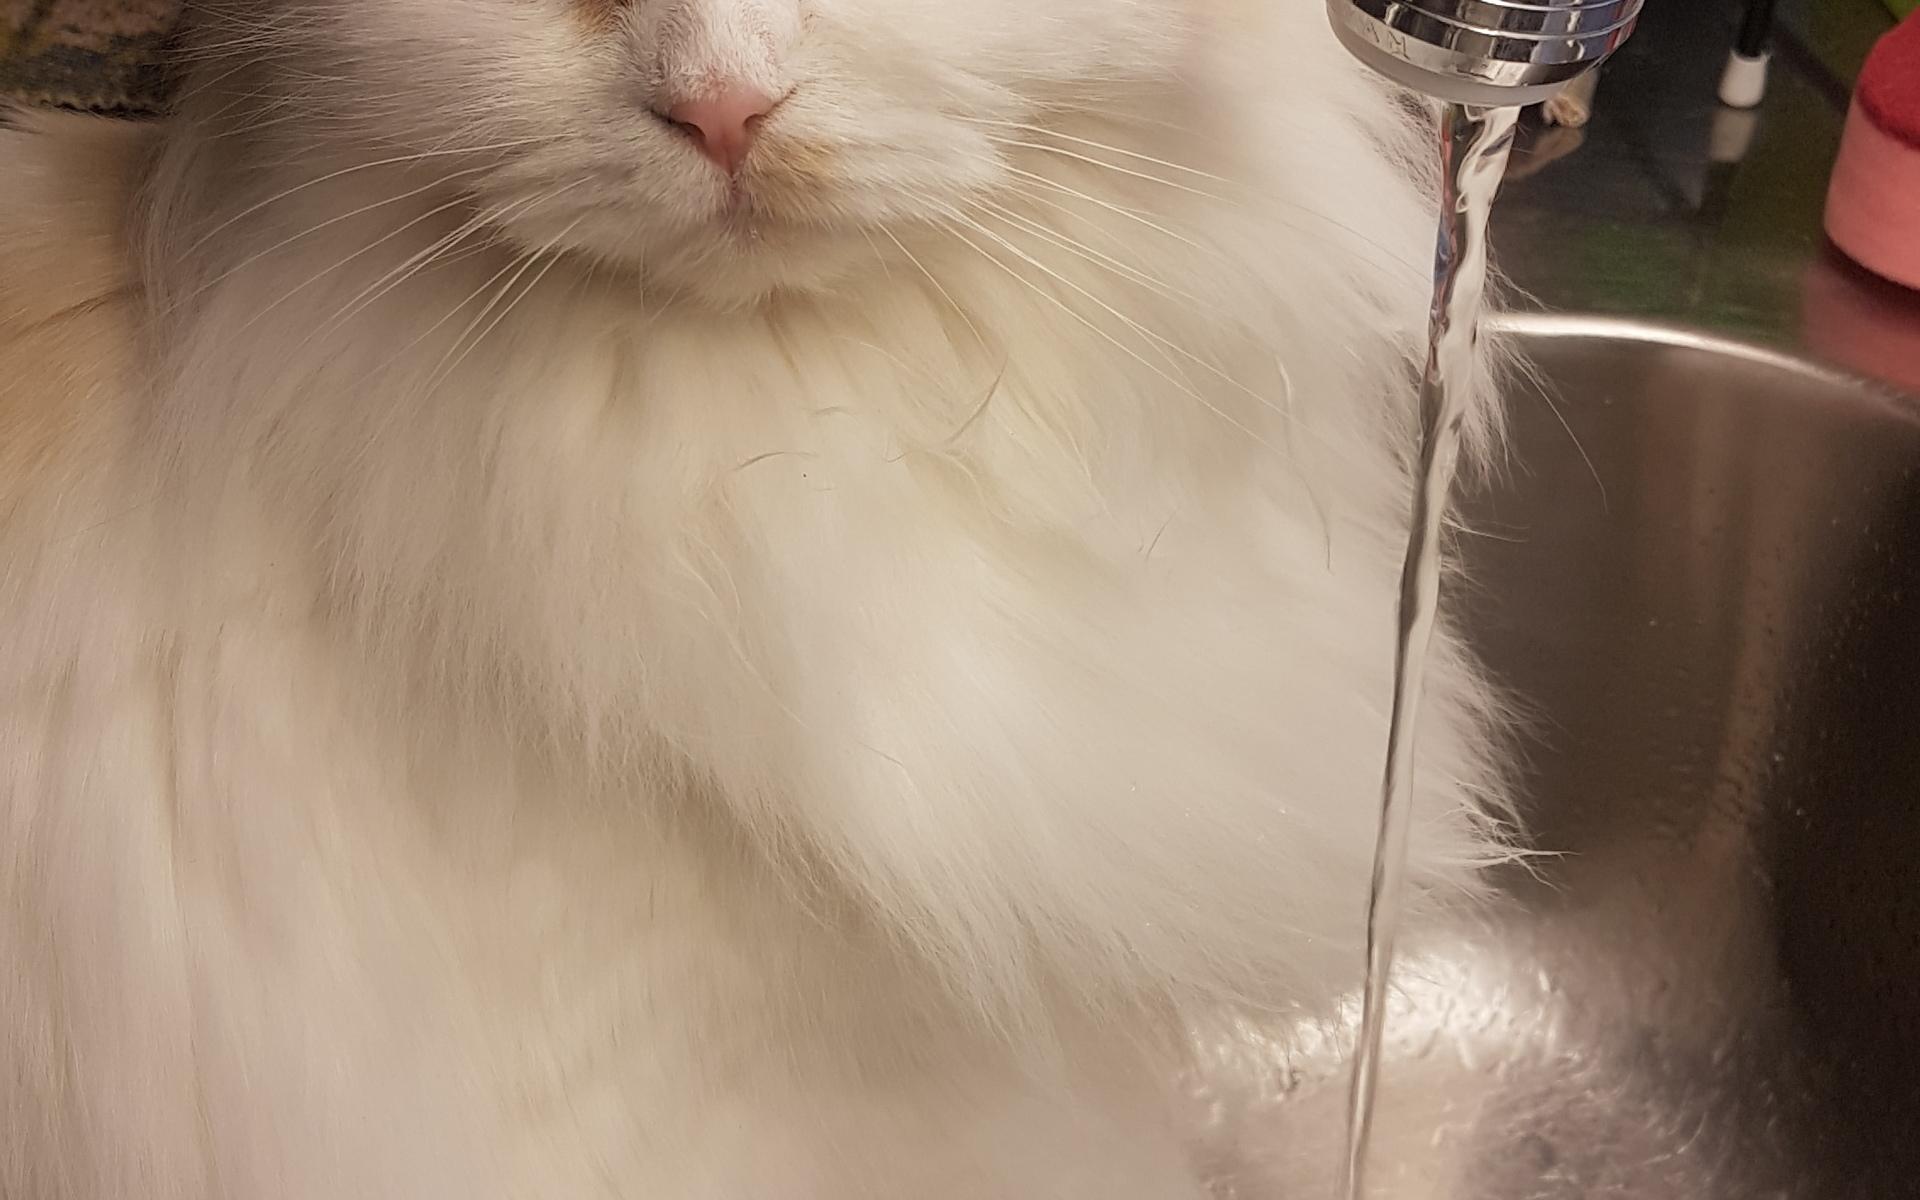 Katten Isa älskar vatten och vill vara med i årets lussekatt. Lillmatte heter Laila Lyckeskär.